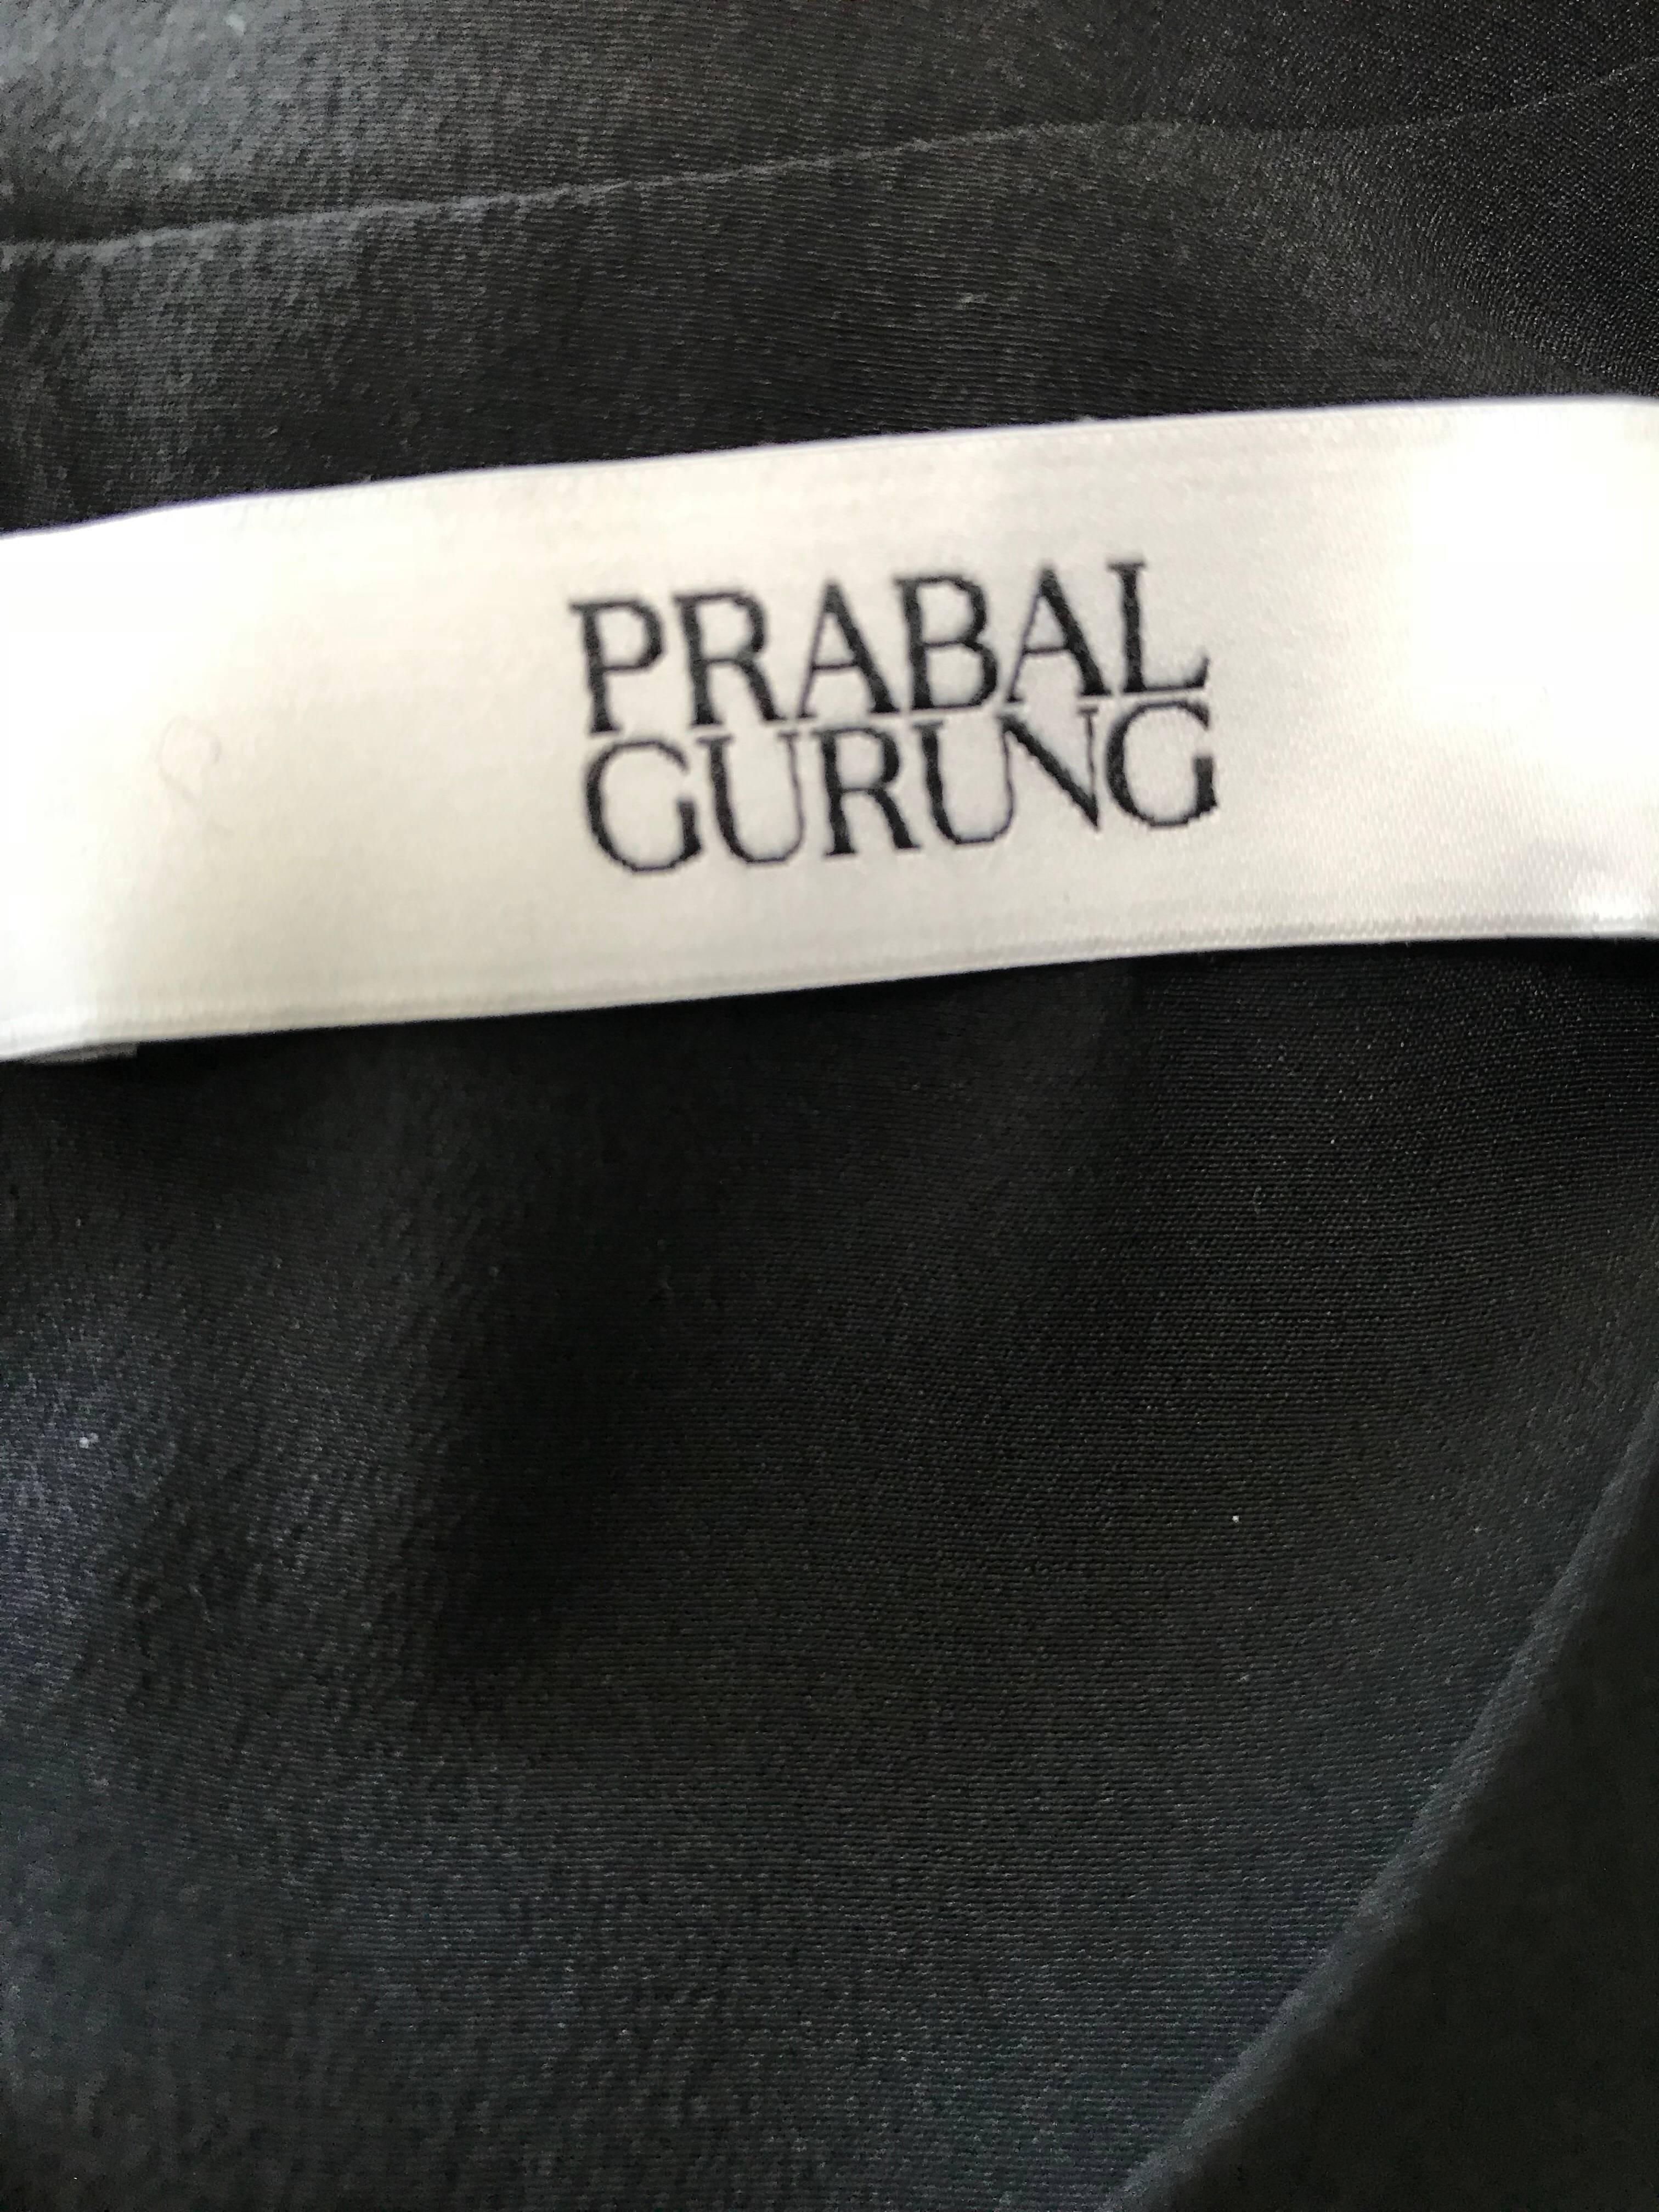 Prabal Gurung - Robe fourreau modulaire en soie verte et noire avec blocs de couleurs, taille 6/8, état neuf en vente 5